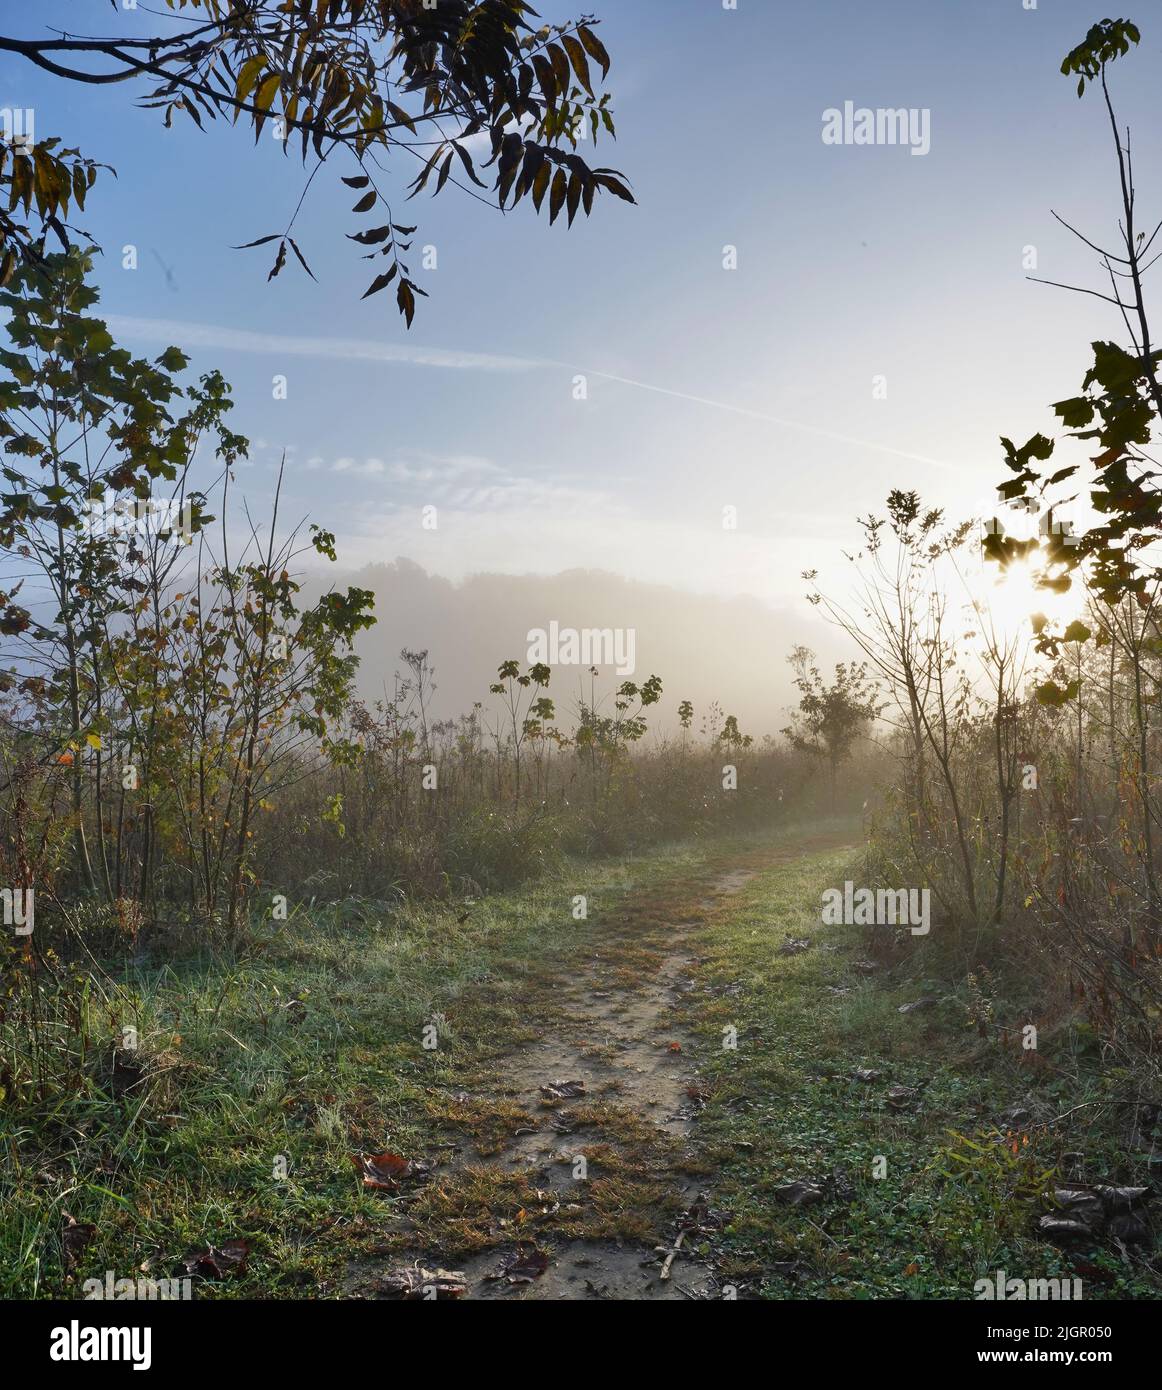 Un'immagine ritratto di un sentiero escursionistico di prima mattina nel paese in Kentucky in una fresca mattinata d'autunno. Foto Stock